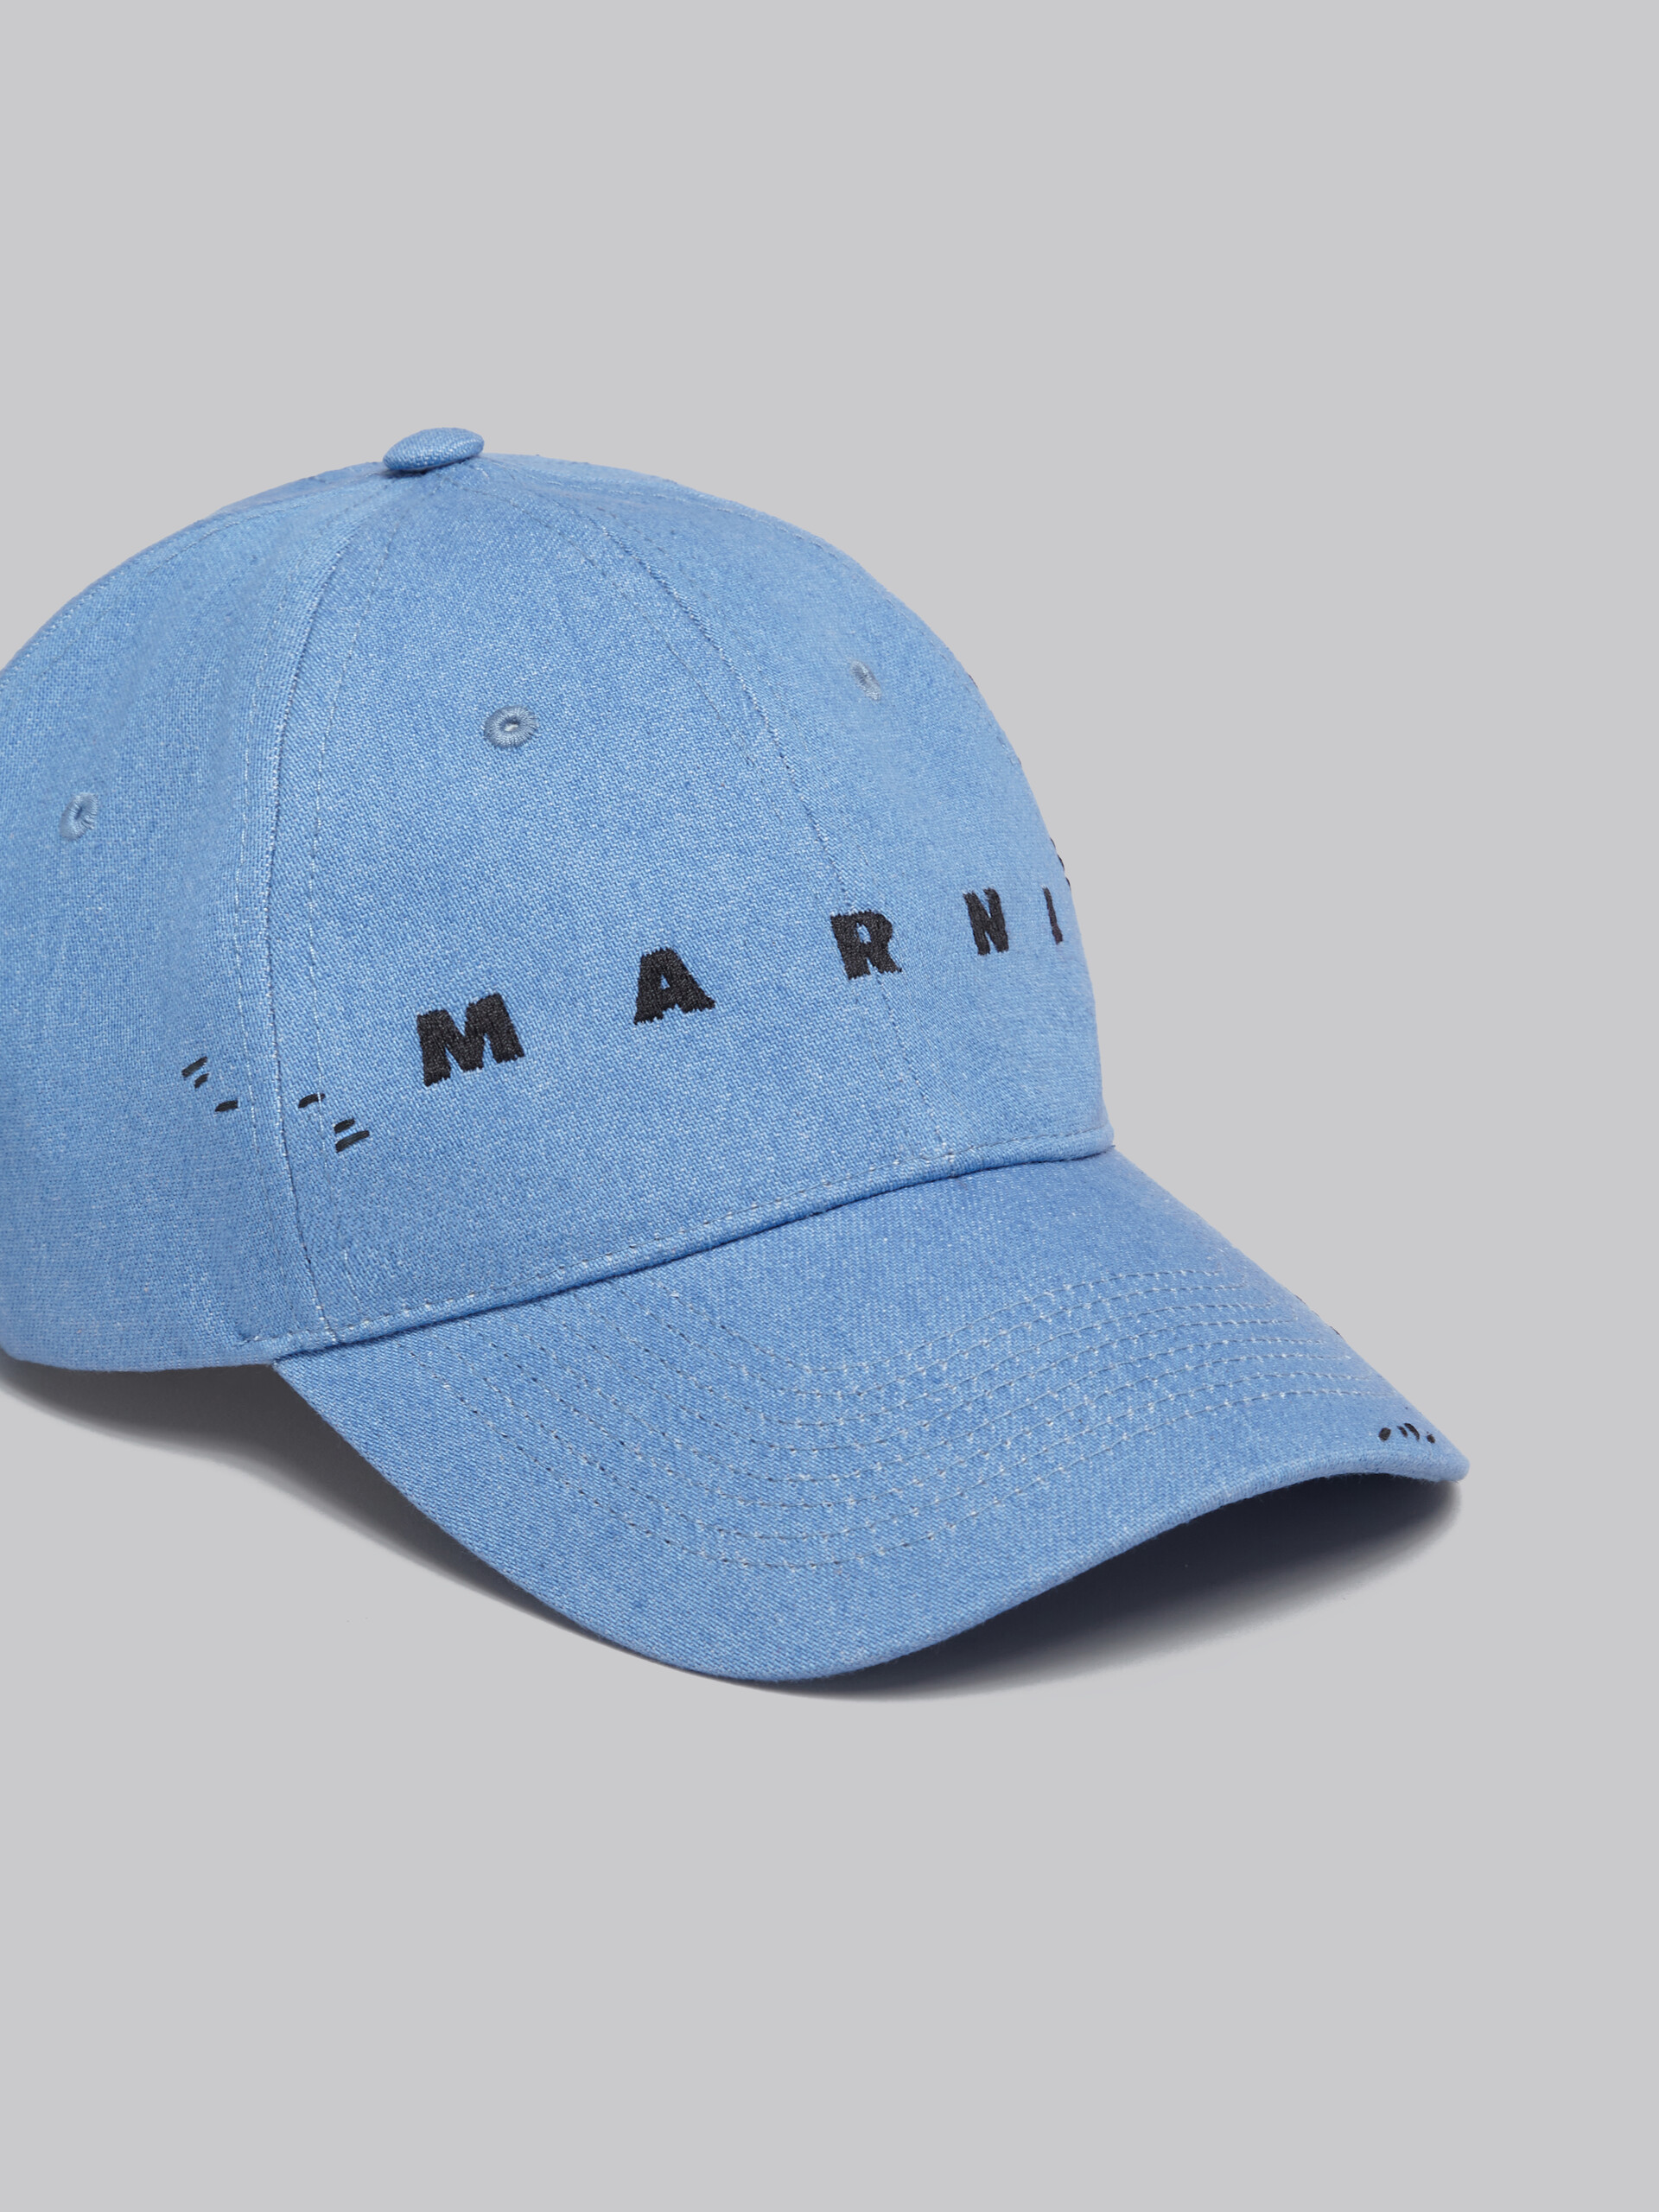 Casquette en denim bleu avec effet raccommodé Marni - Chapeau - Image 4